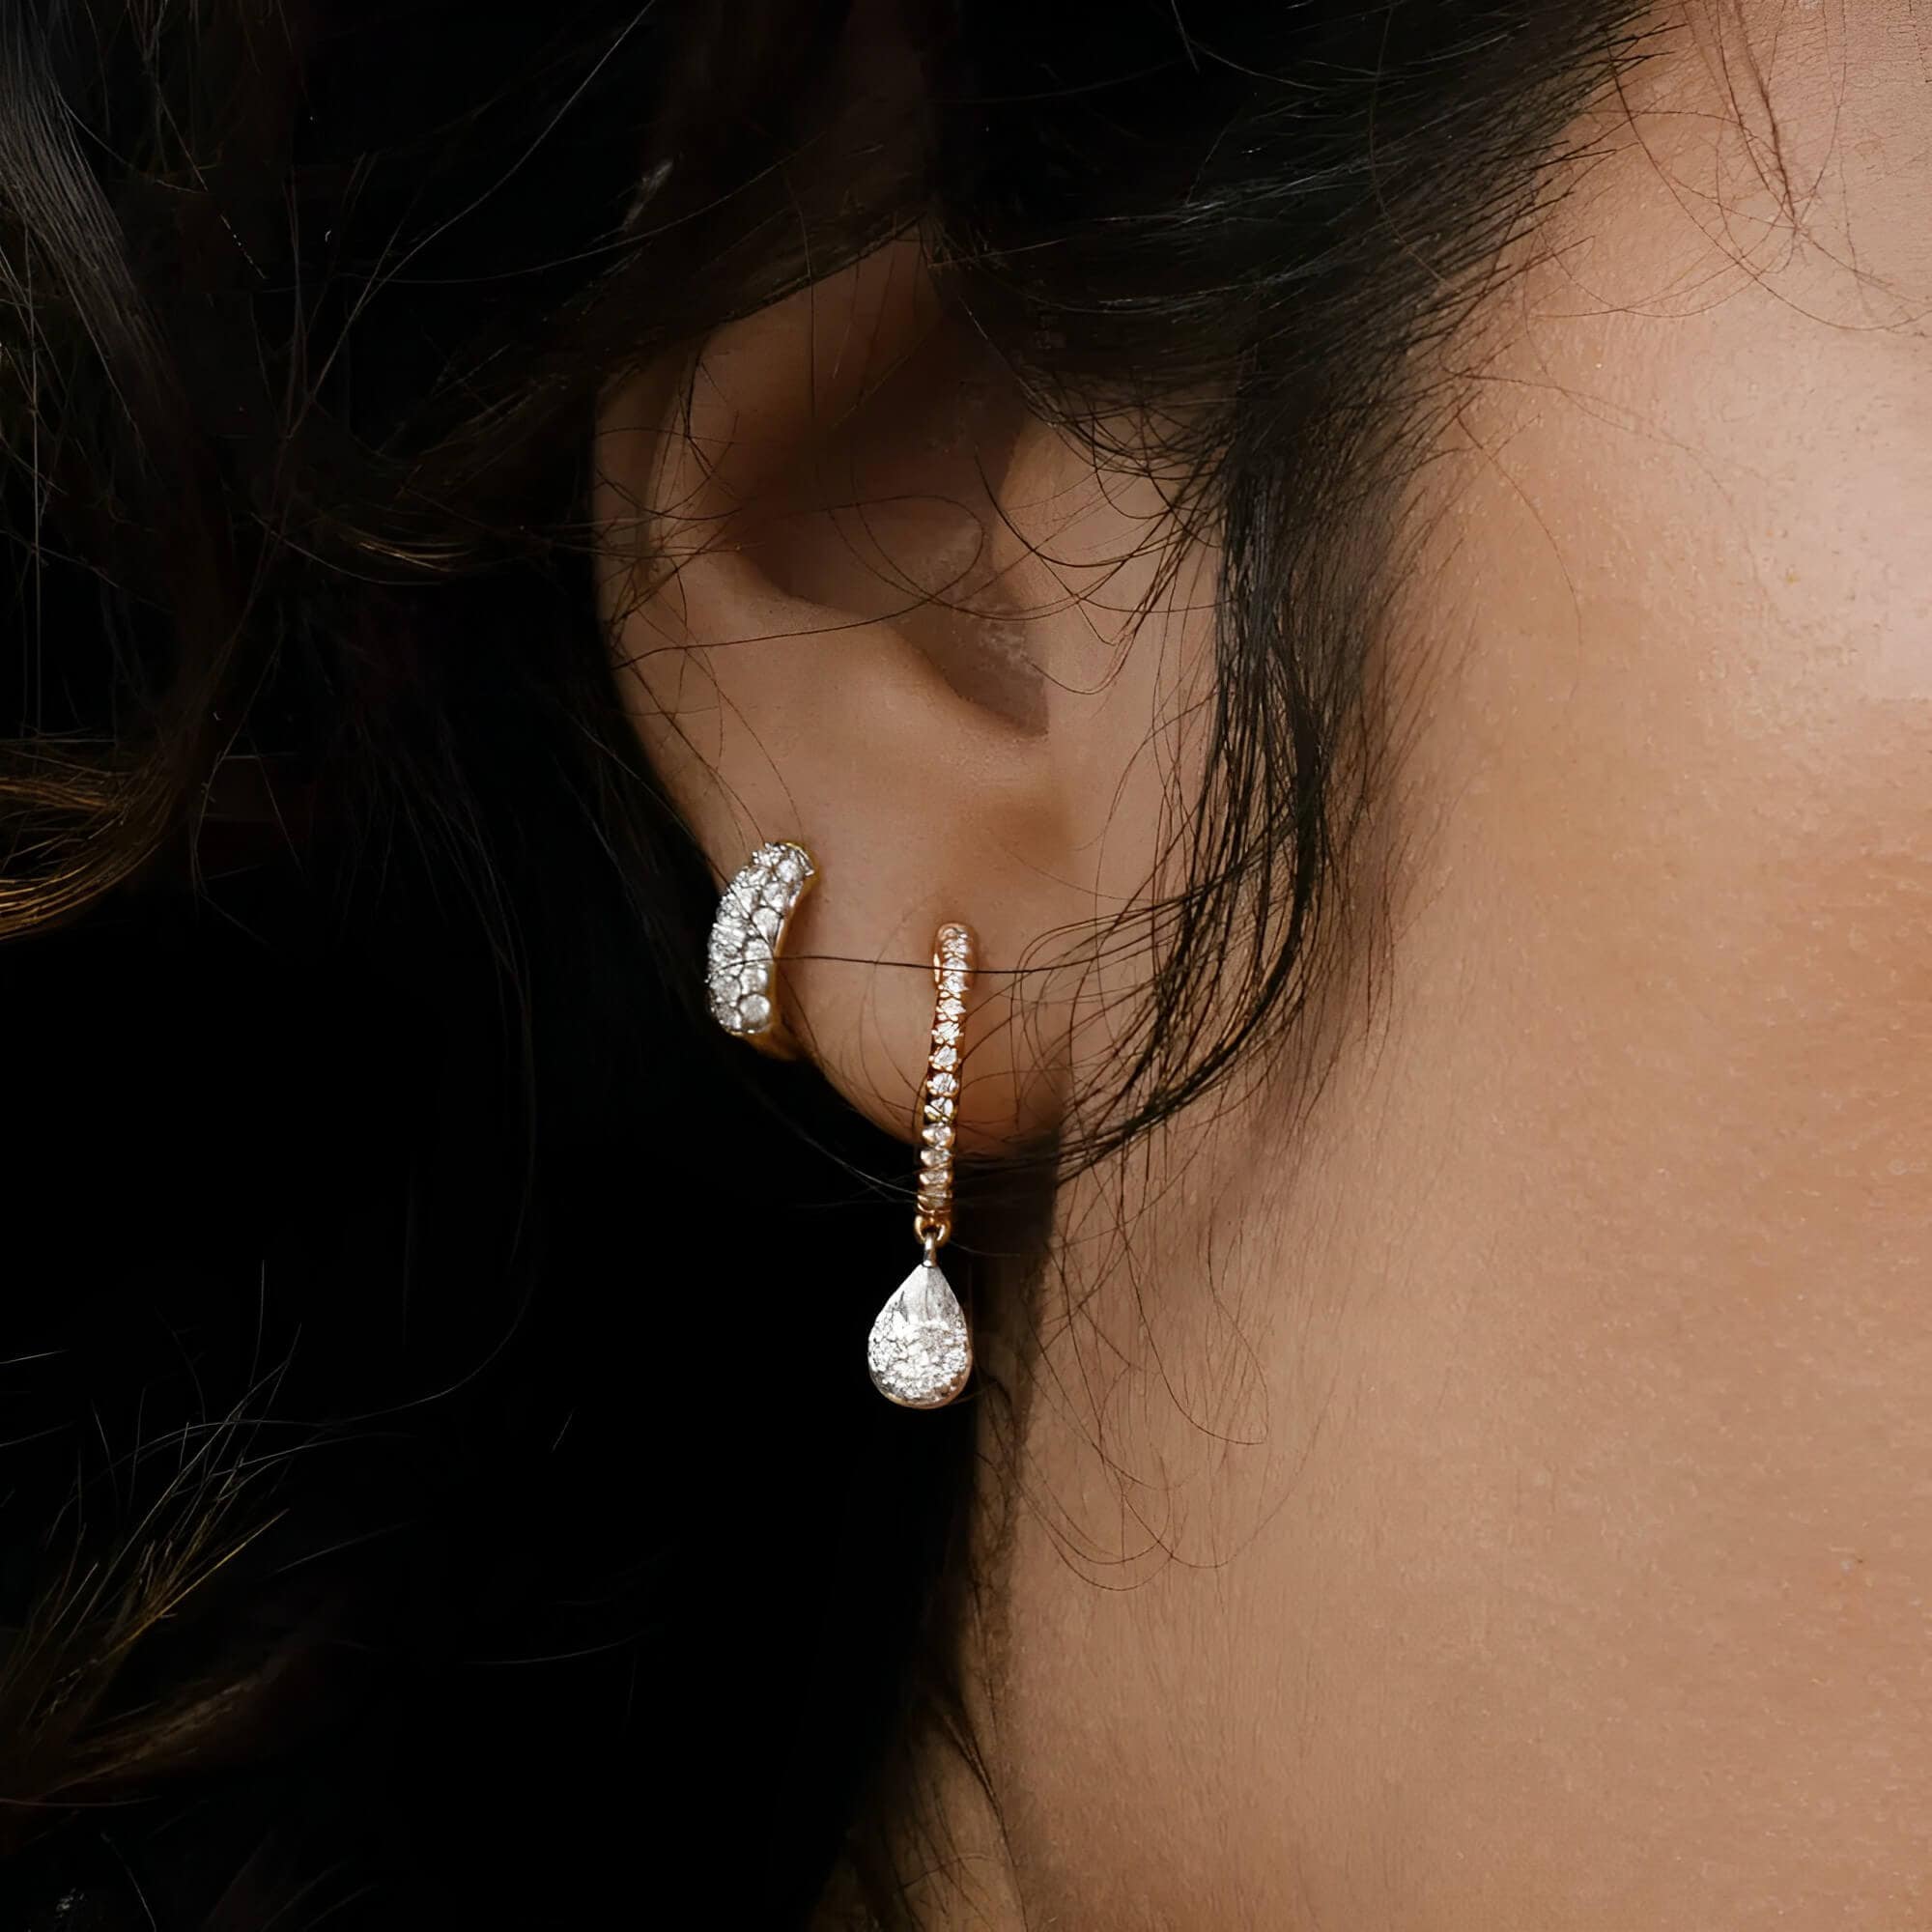 pave huggie hoop earrings on the woman's ear